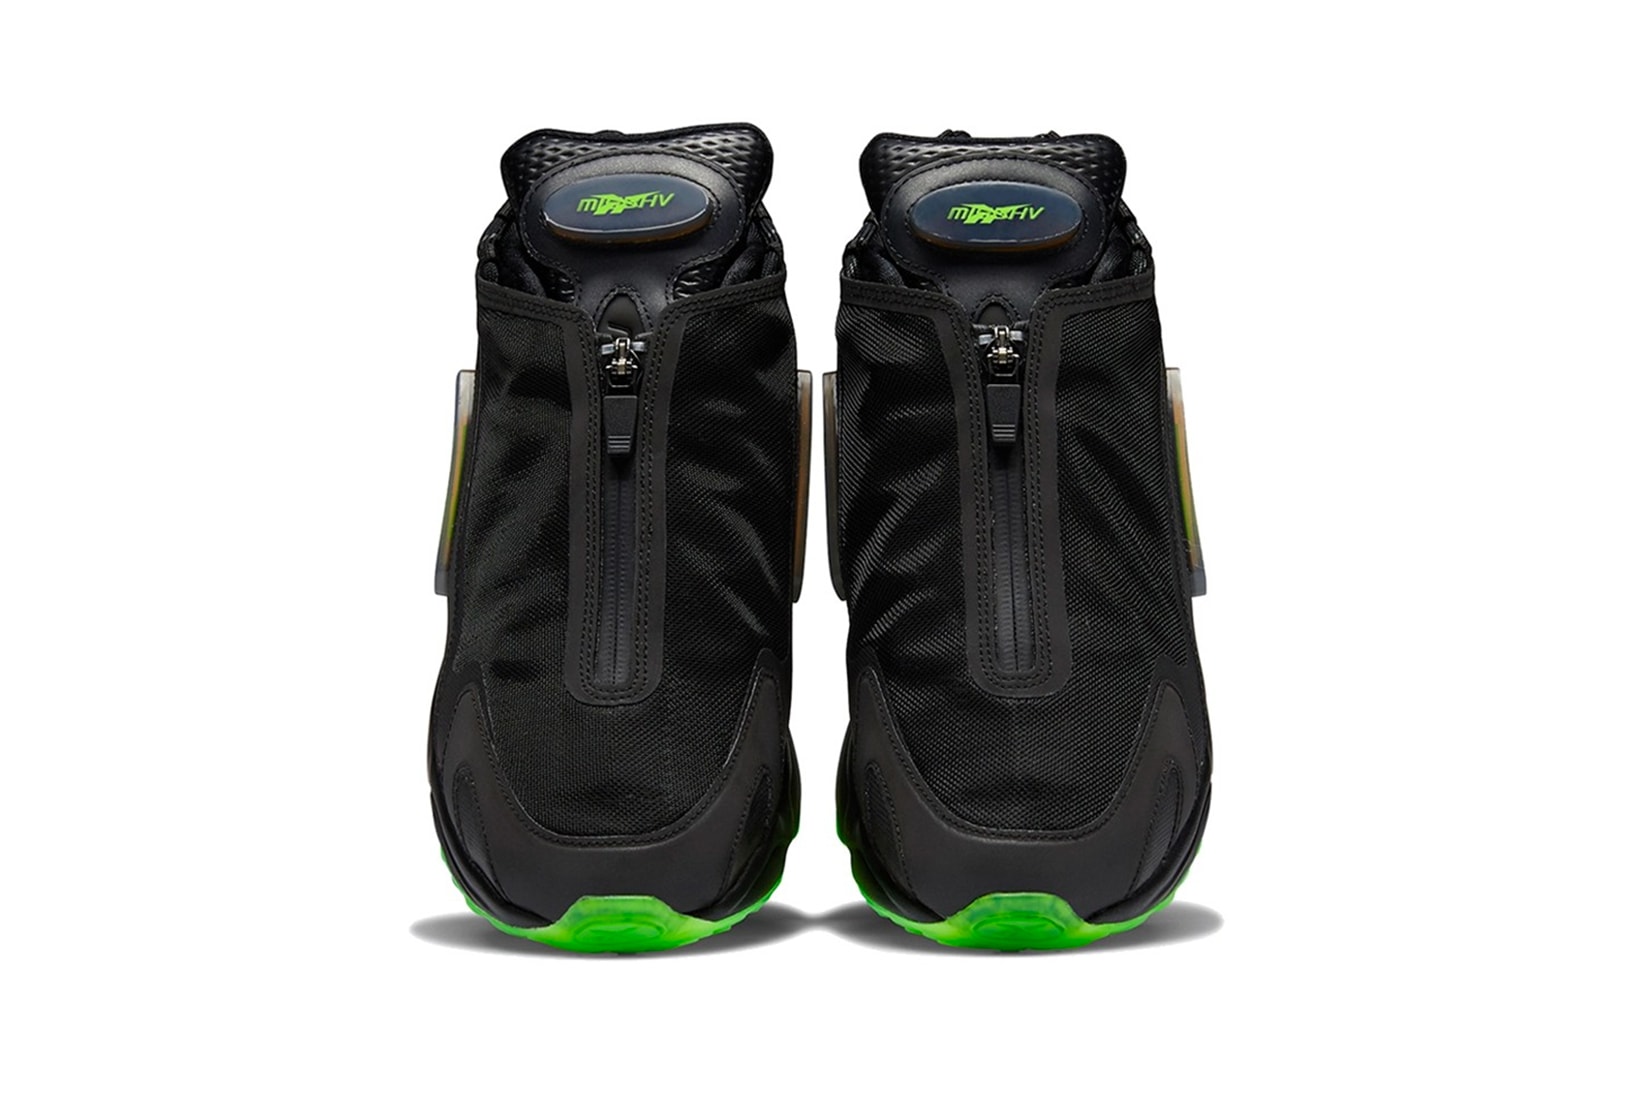 misbhv reebok daytona dmx sneakers black green release date sneakerhead footwear shoes